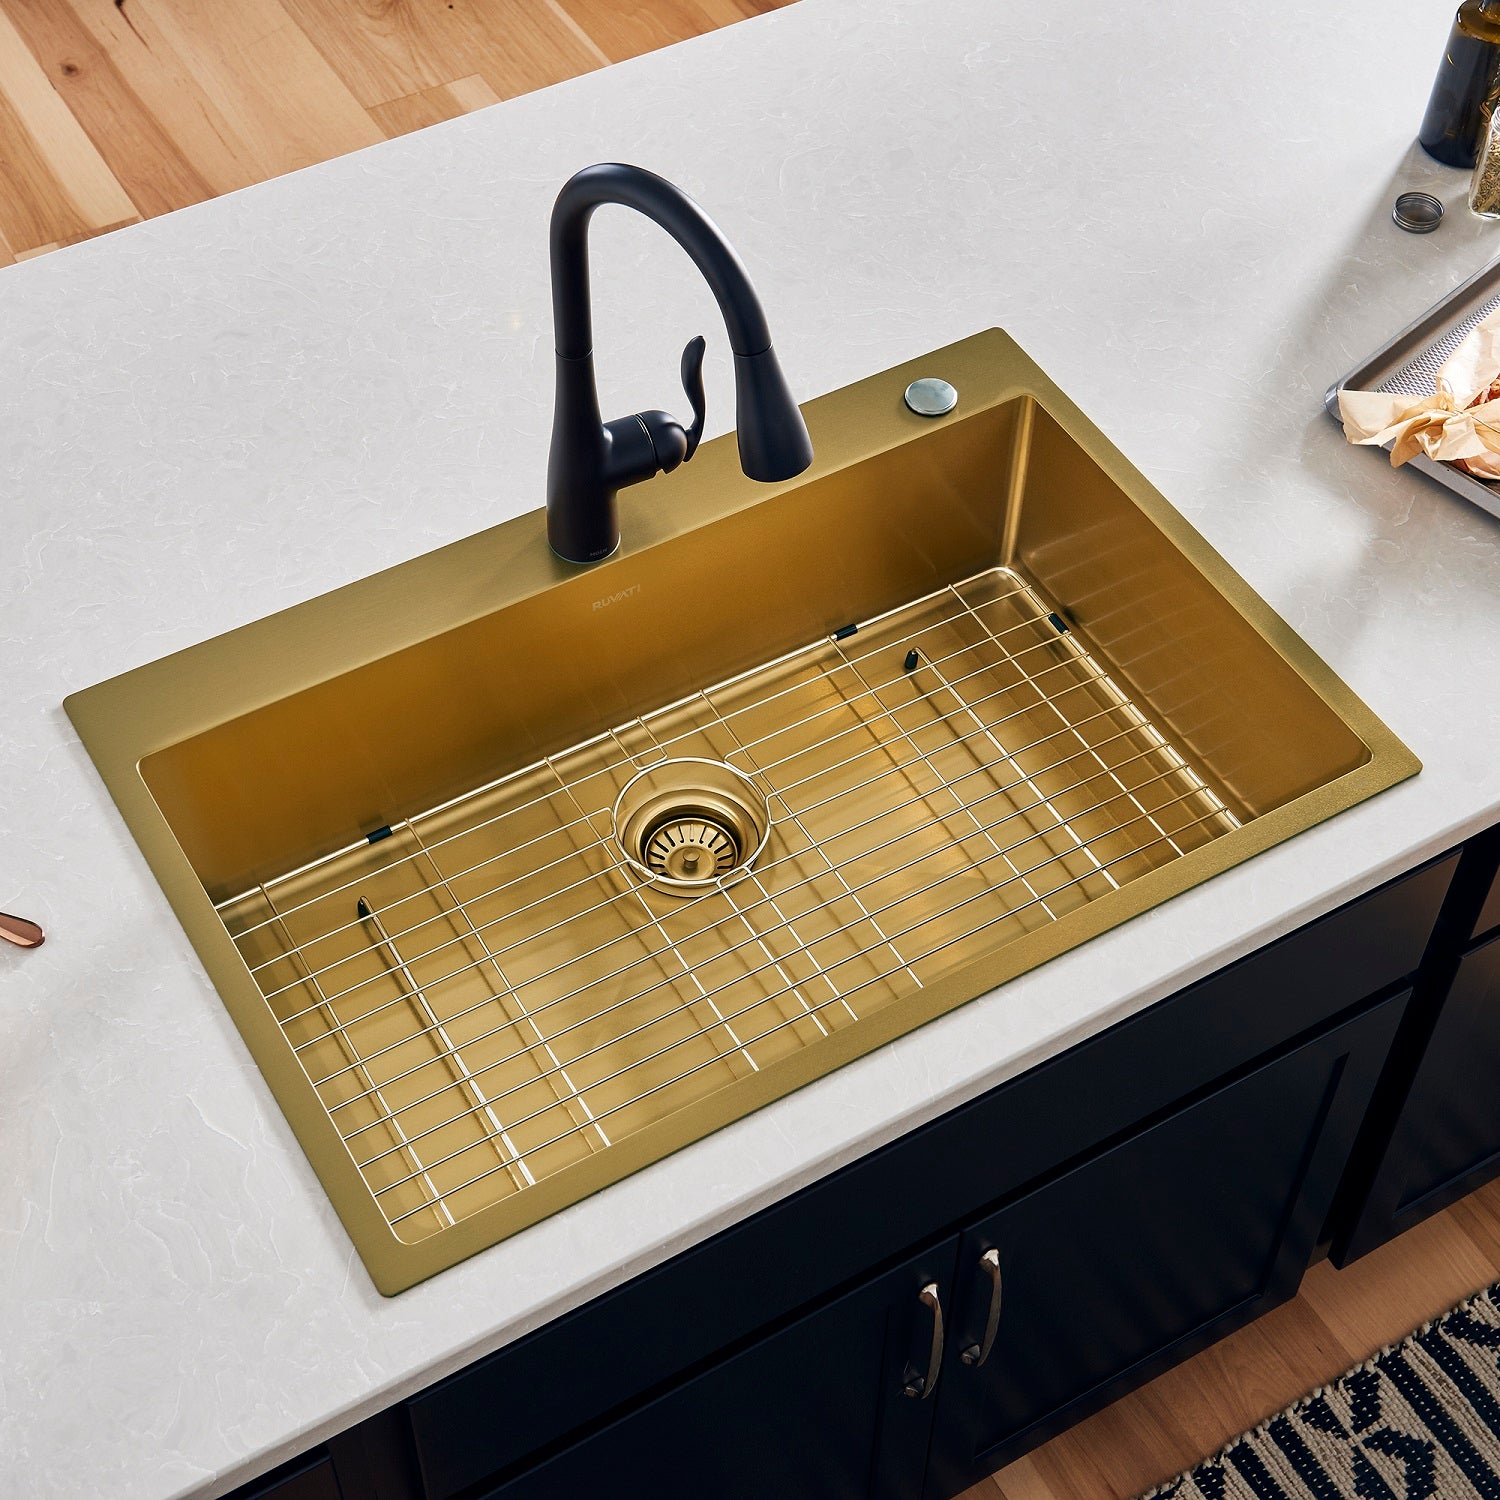 Ruvati 33 x 22 inch Satin Brass Matte Gold Stainless Steel Drop-in Topmount Kitchen Sink Single Bowl RVH5005GG - 4